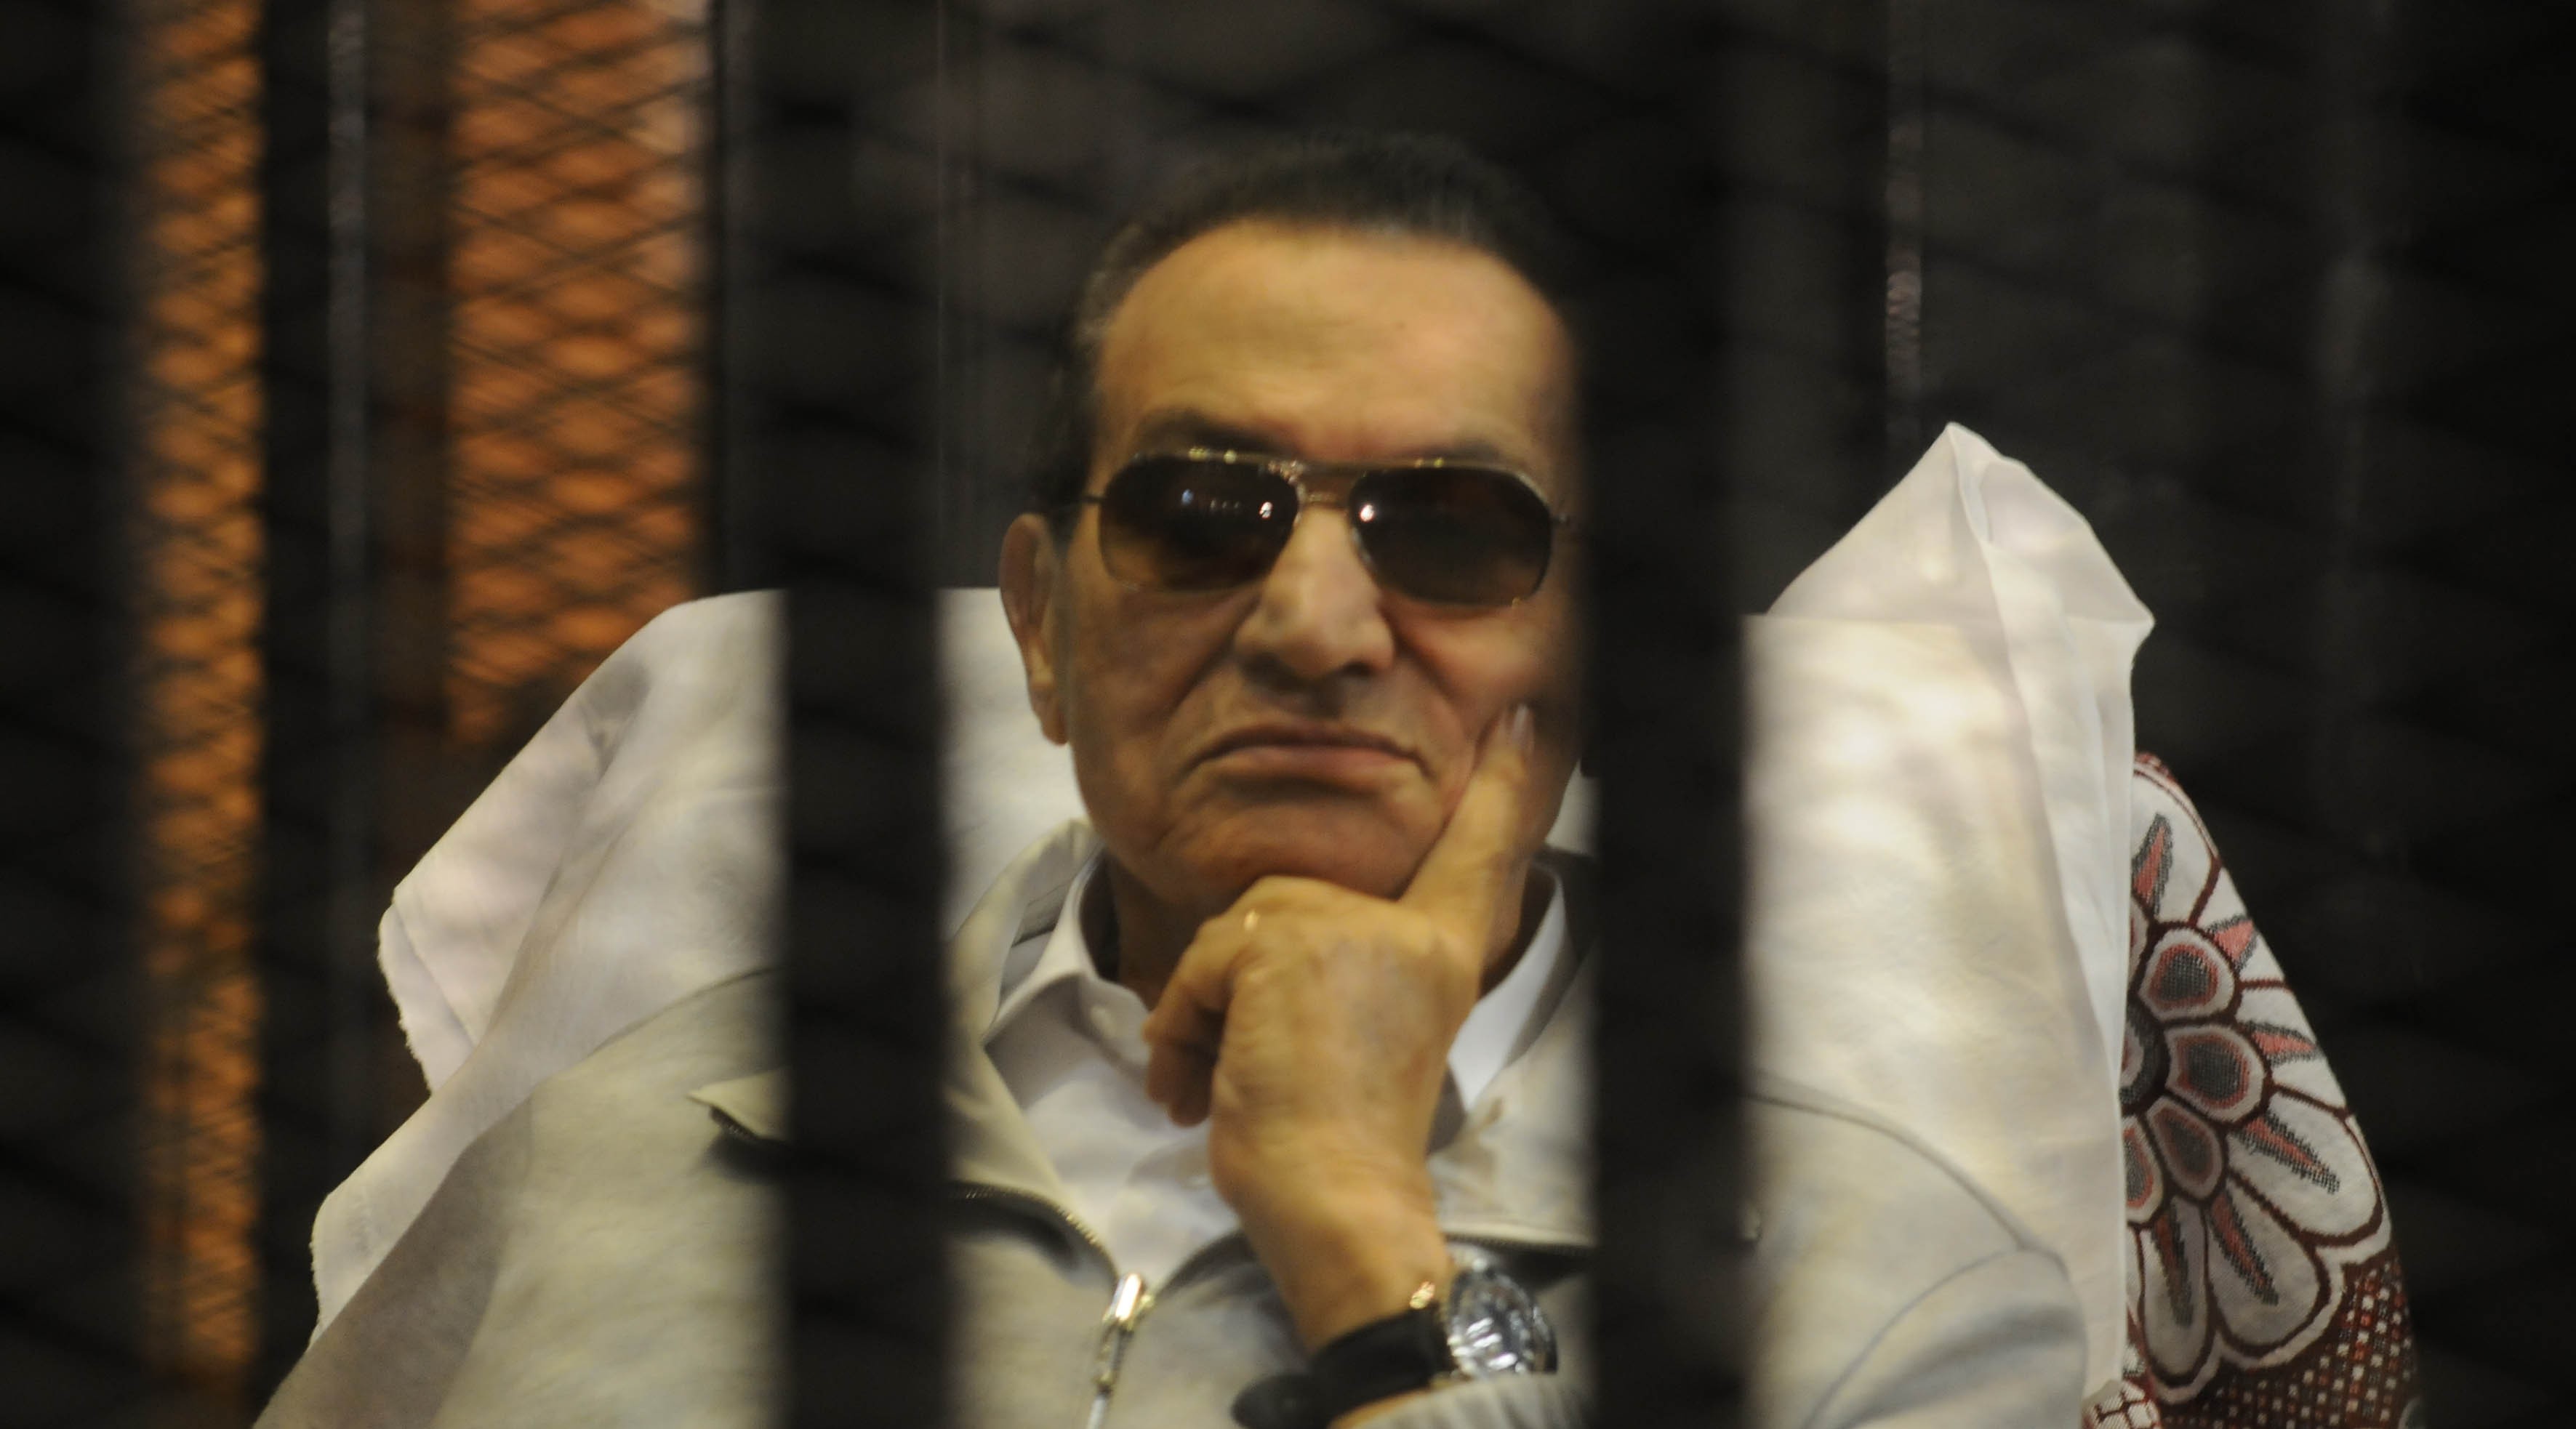   بدء محاكمة الرئيس المخلوع حسنى مبارك أمام النقض بأكاديمية الشروق